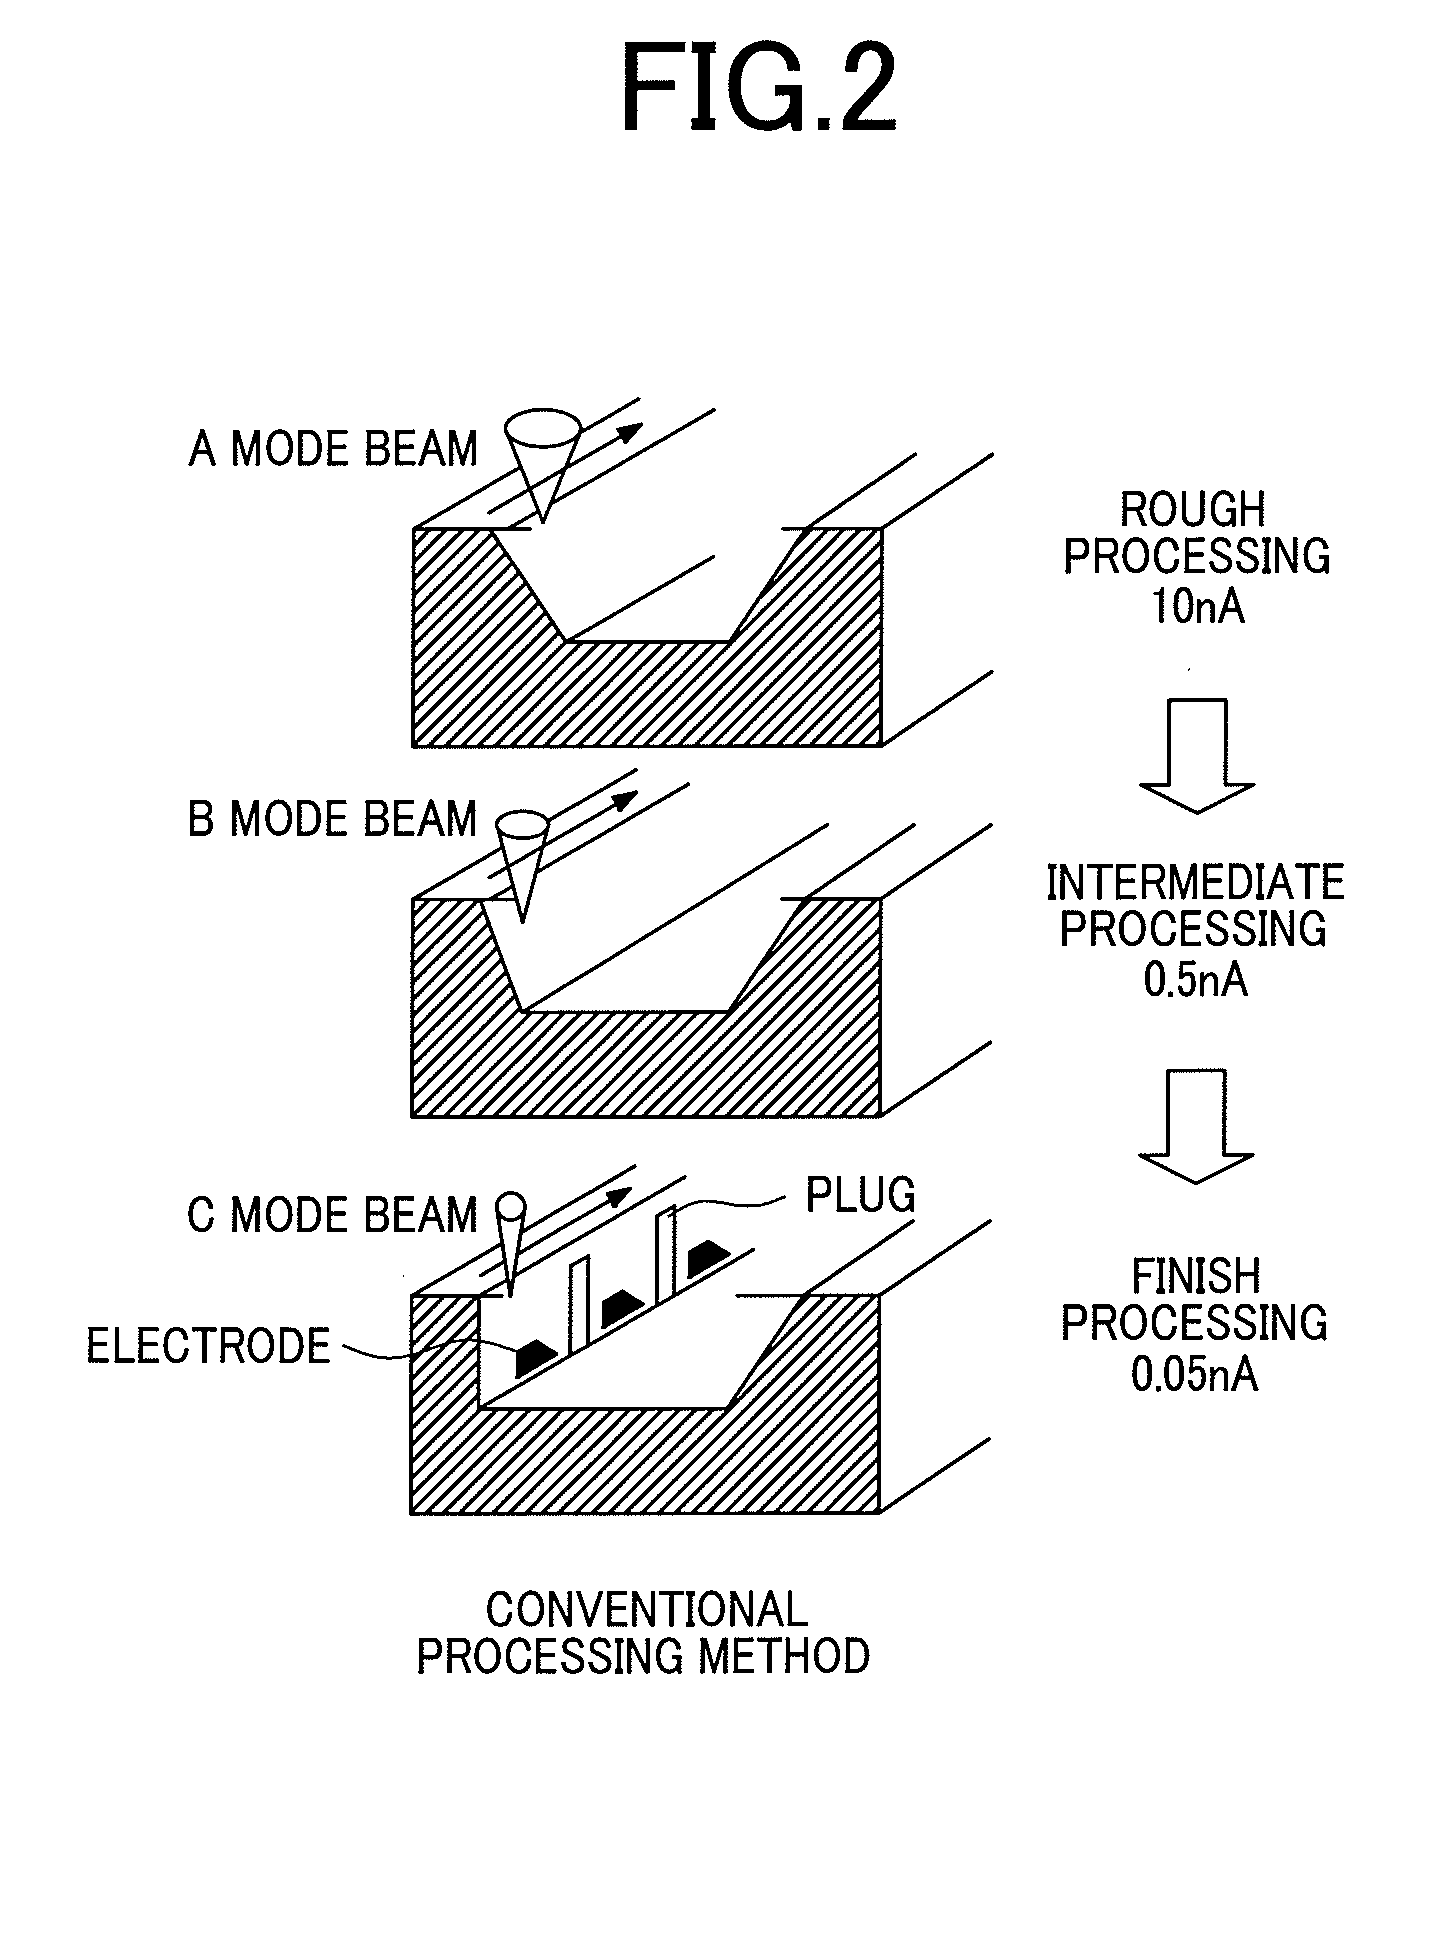 Ion beam processing apparatus